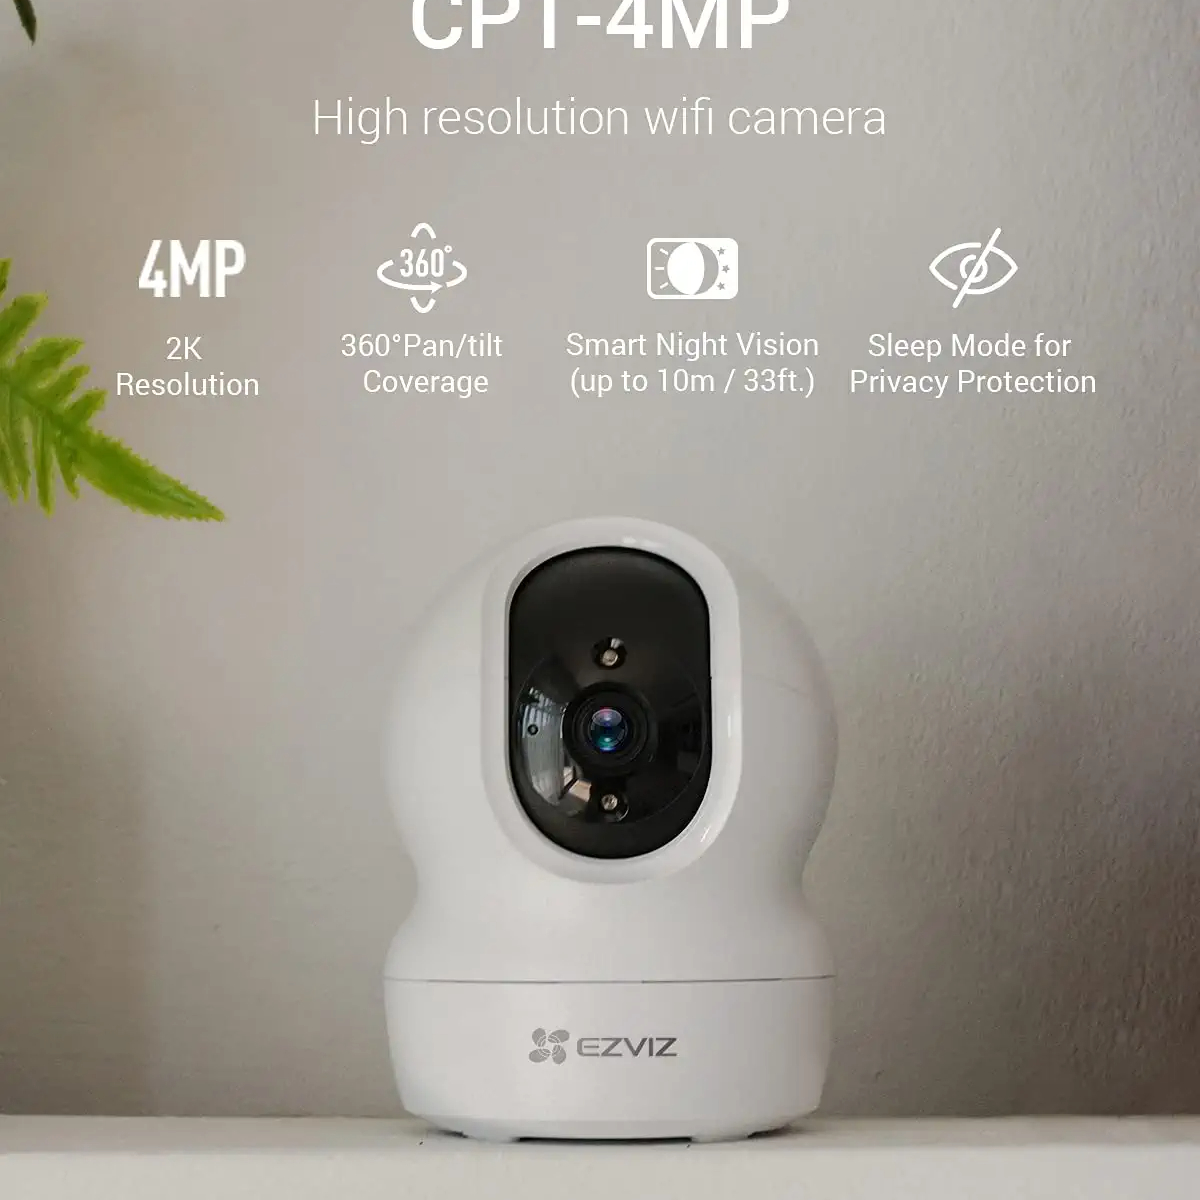 EZVIZ CP1 4MP Caméra Surveillance WiFi Intérieure, Camera IP WiFi & Ethernet 360 ° Pan/Tilt Compatible Alexa, Vision Nocturne Intelligente, Suivi Auto, Audio Bidirectionnel, Mode Veille, H.265